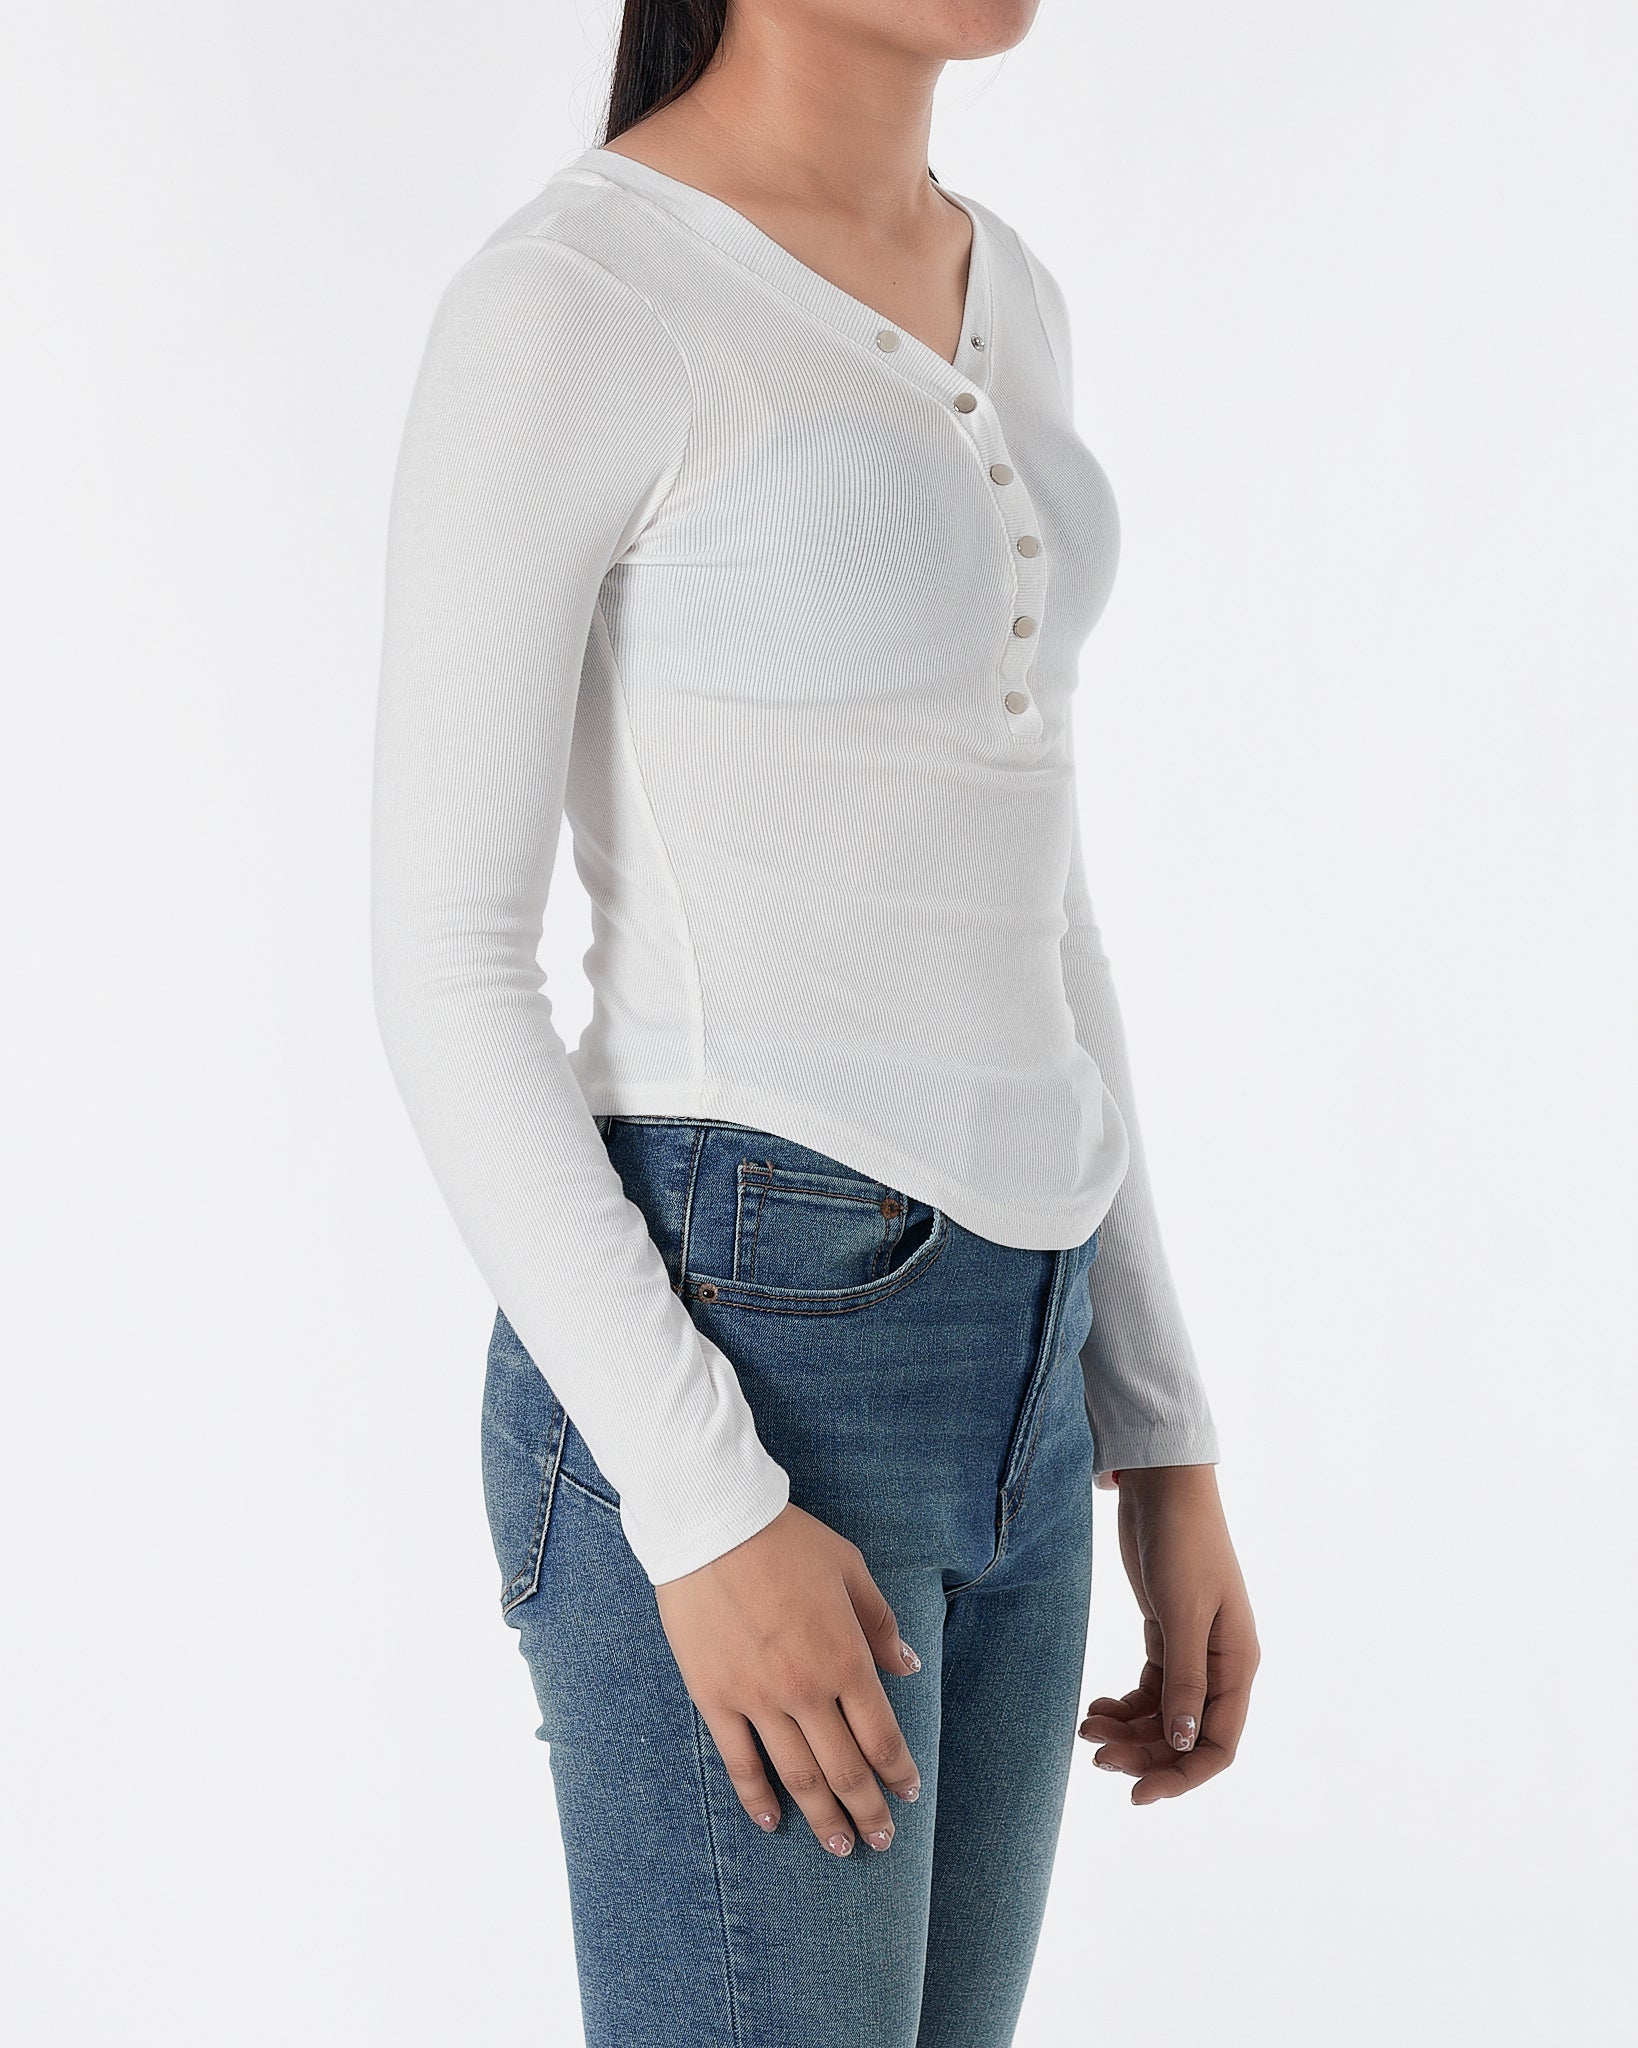 Lady V Neck White T-Shirt Long Sleeve 12.90